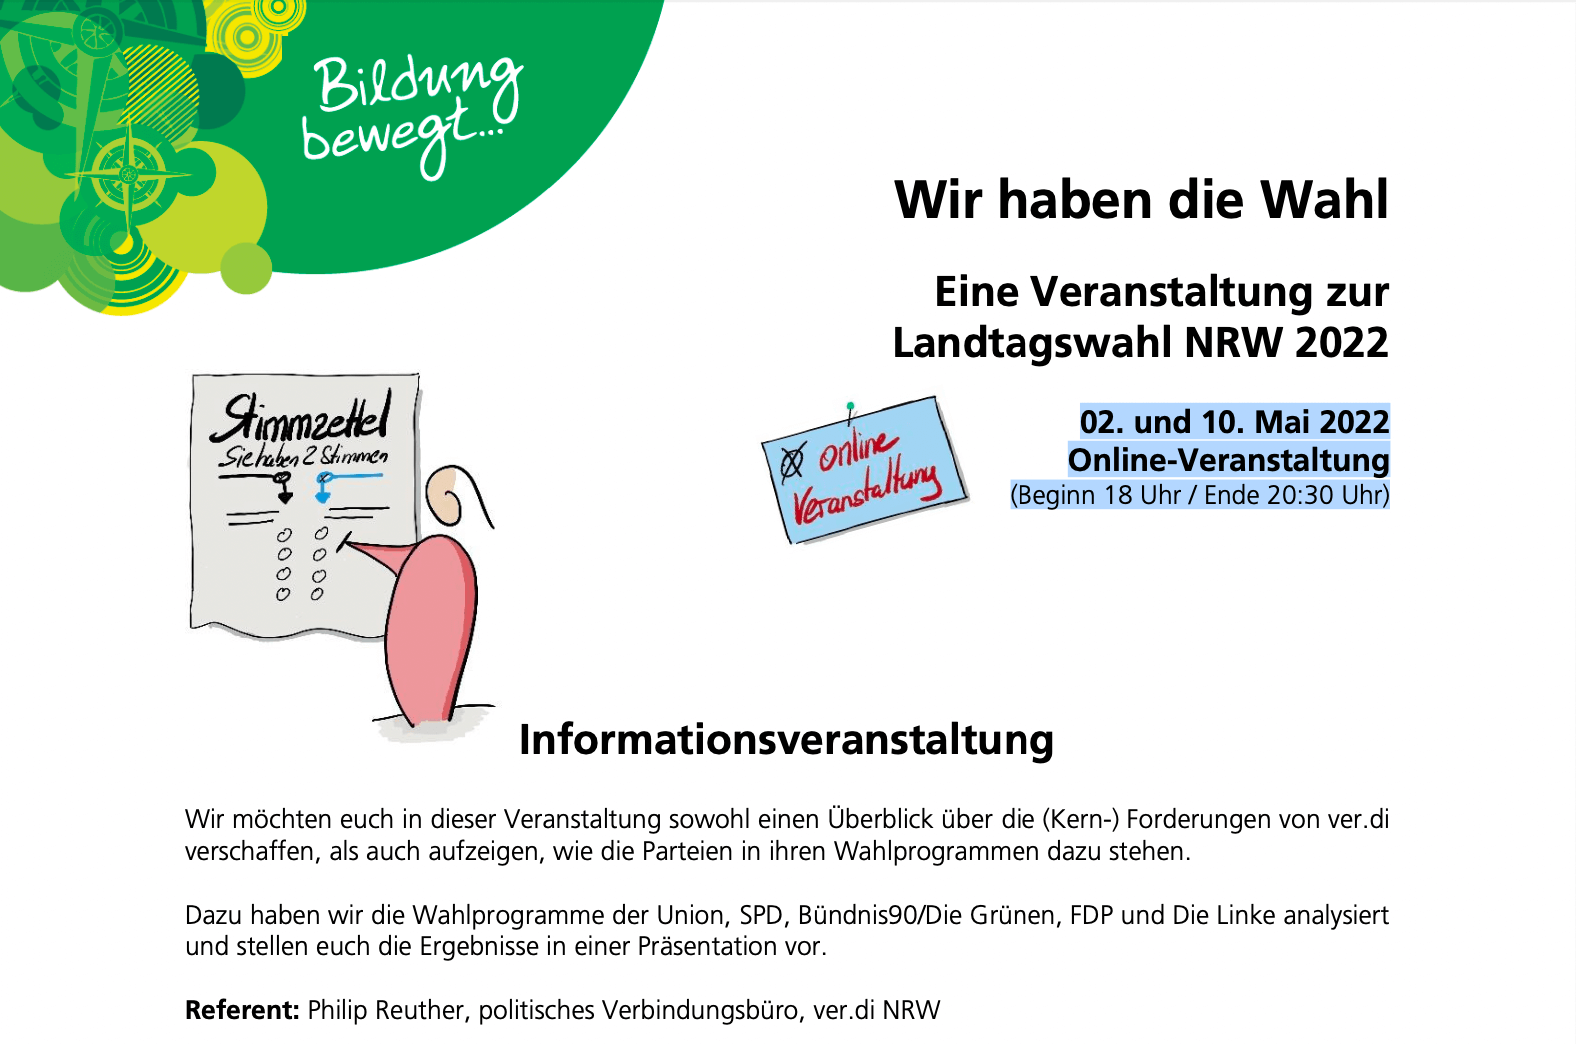 ver.di NRW: Wir haben die Wahl - eine Veranstaltung zur Landtagswahl NRW 2022